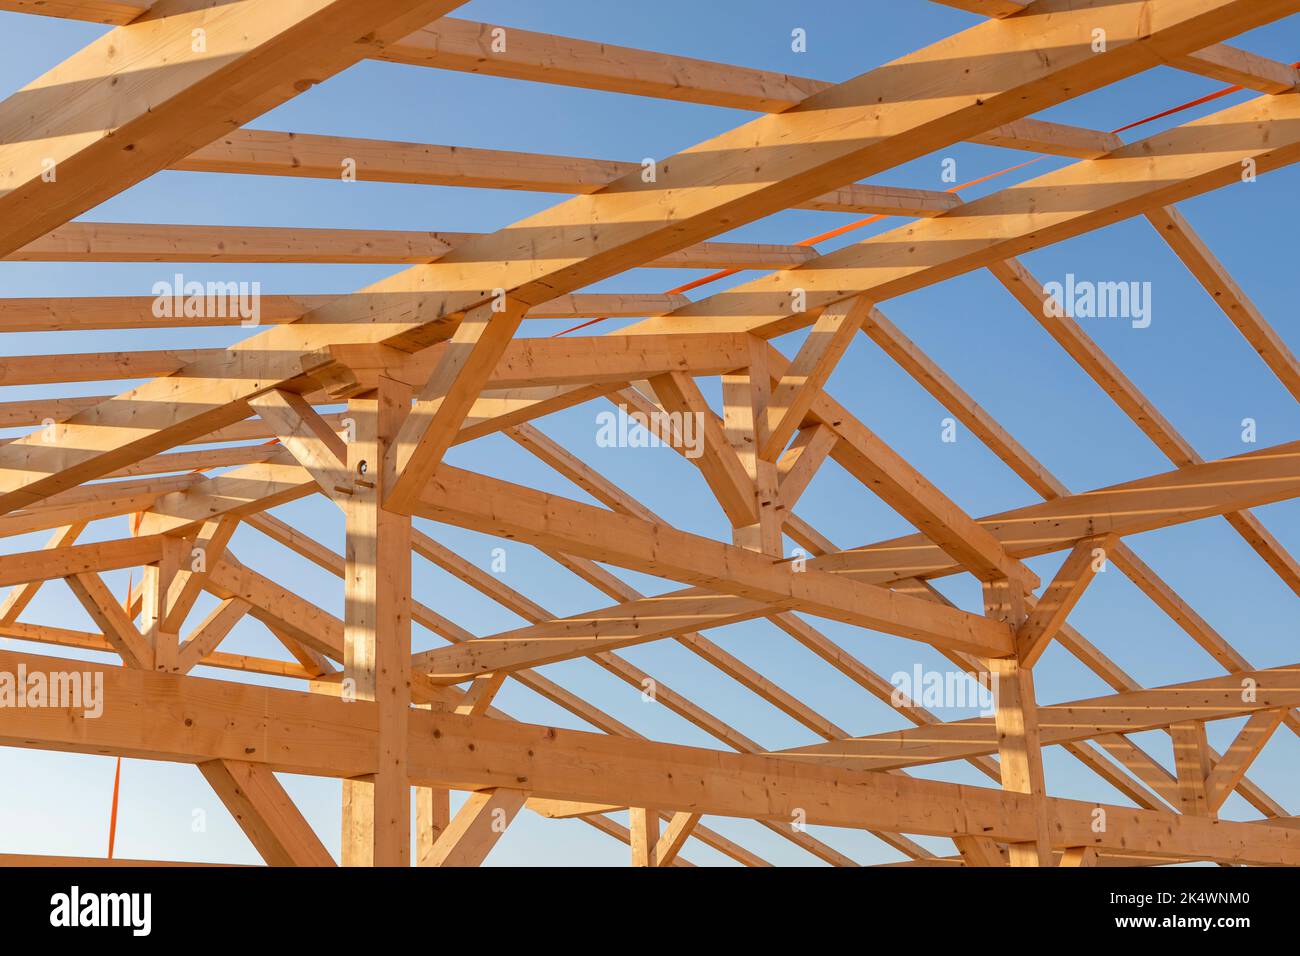 Una estructura de techo de madera resistente contra un cielo azul claro Foto de stock